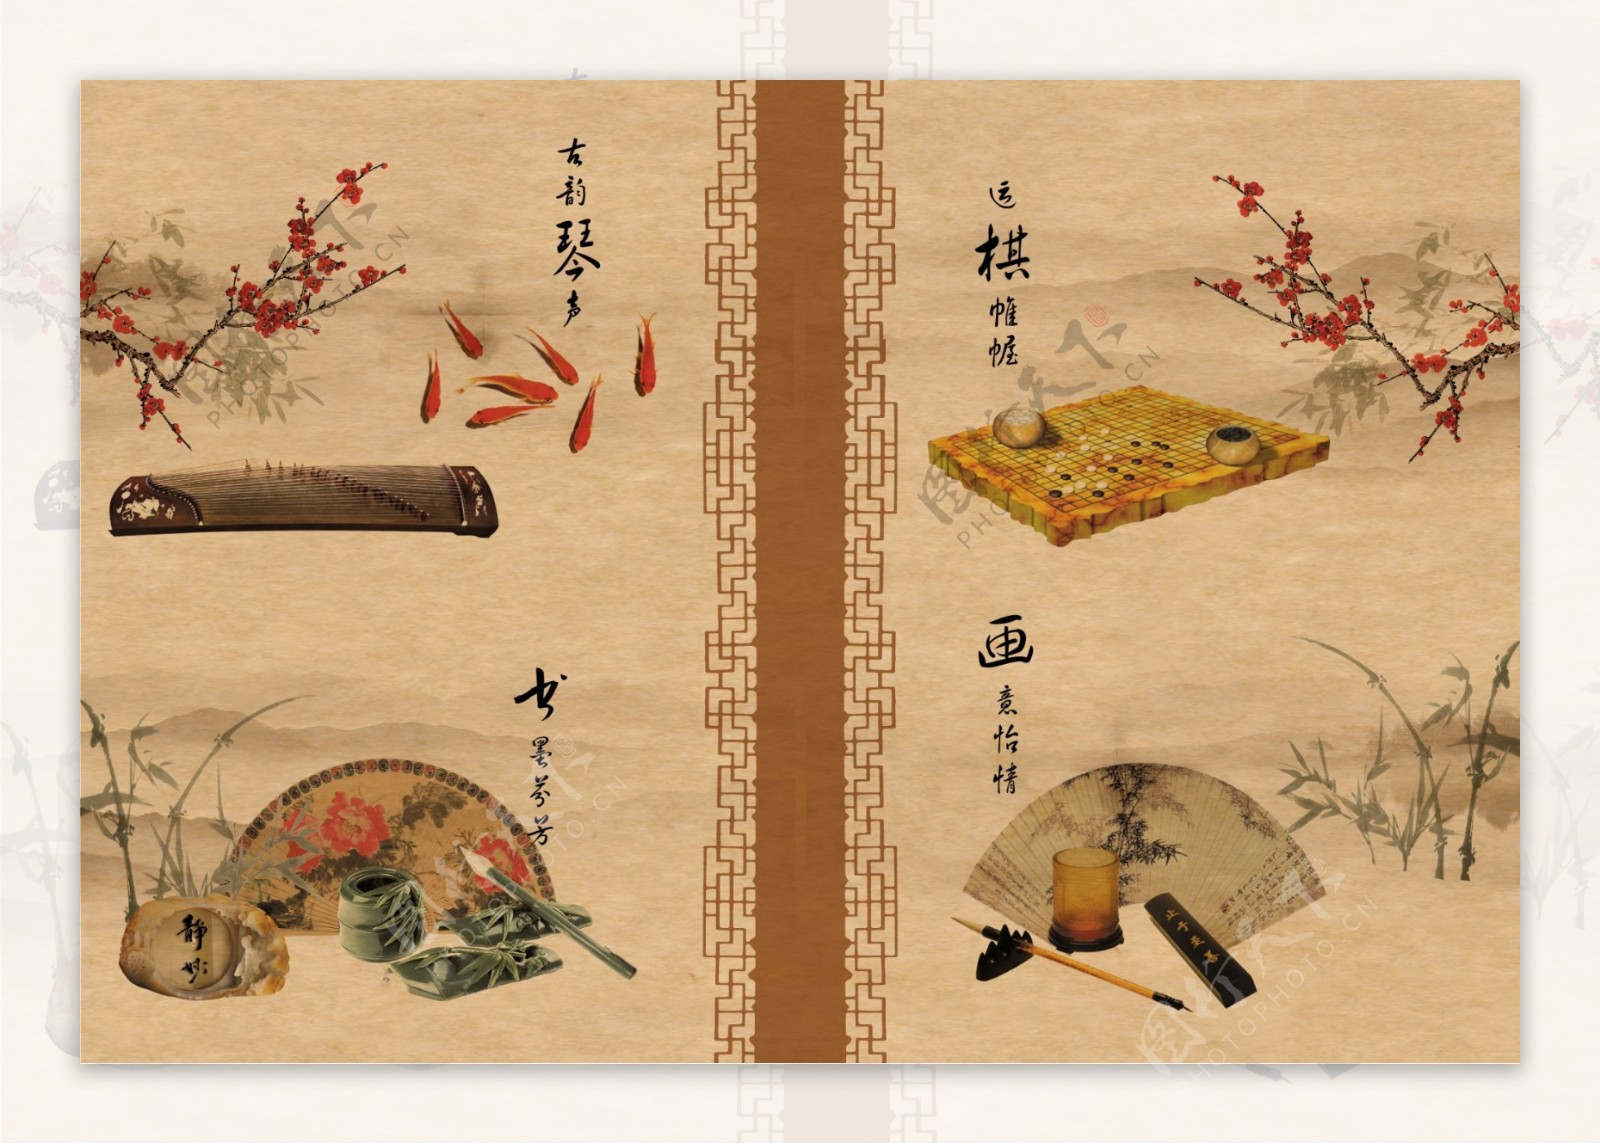 琴棋书画中国风展板素材图片